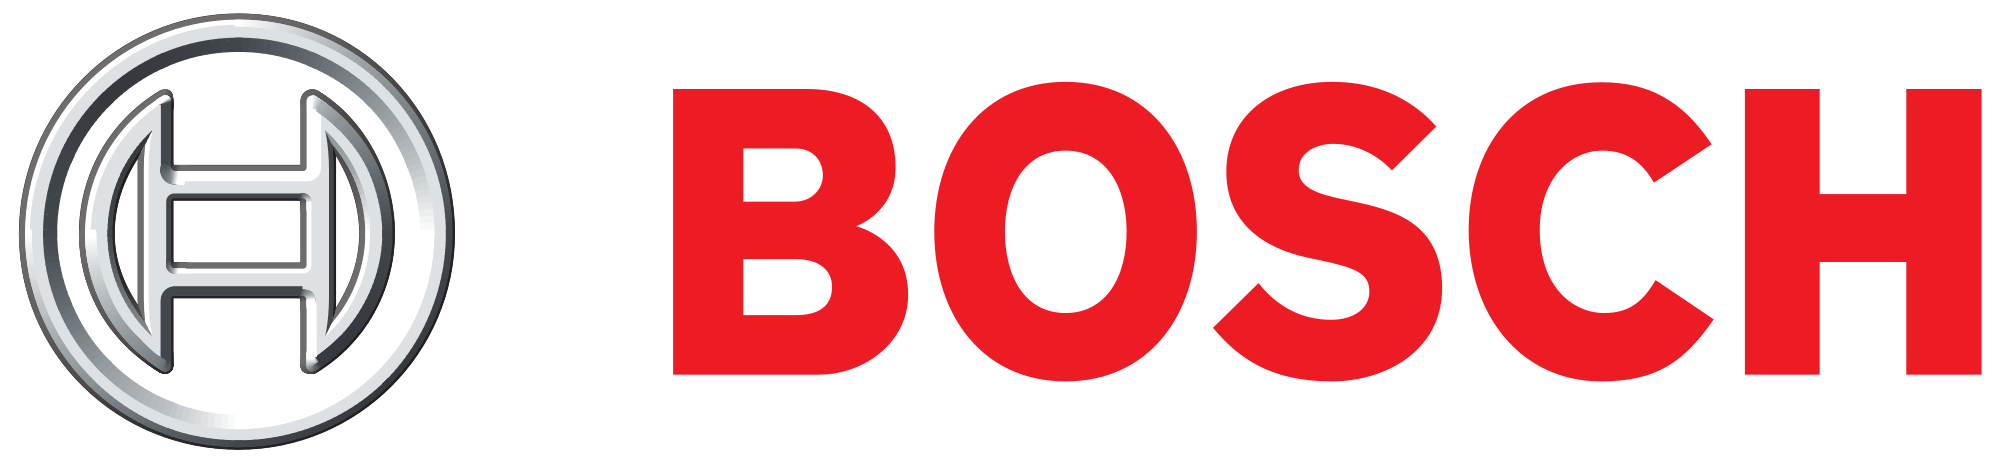 Botech Logo photo - 1